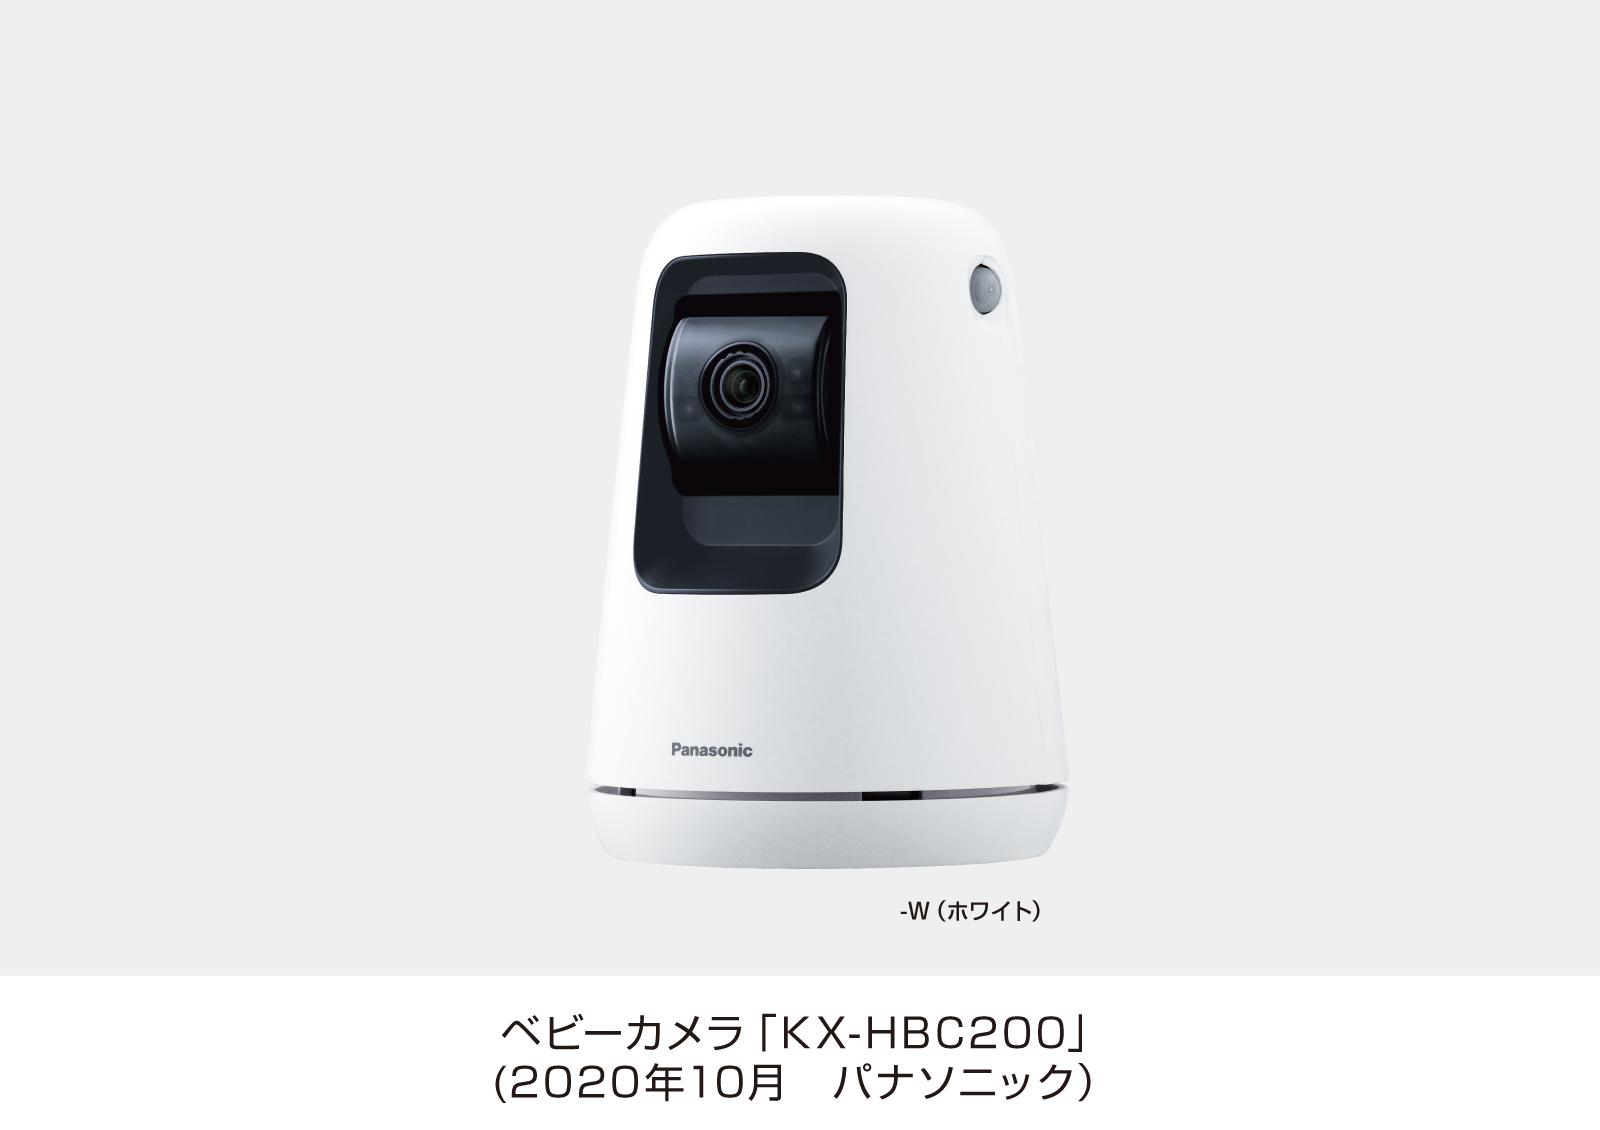 ベビーカメラ「KX-HBC200」